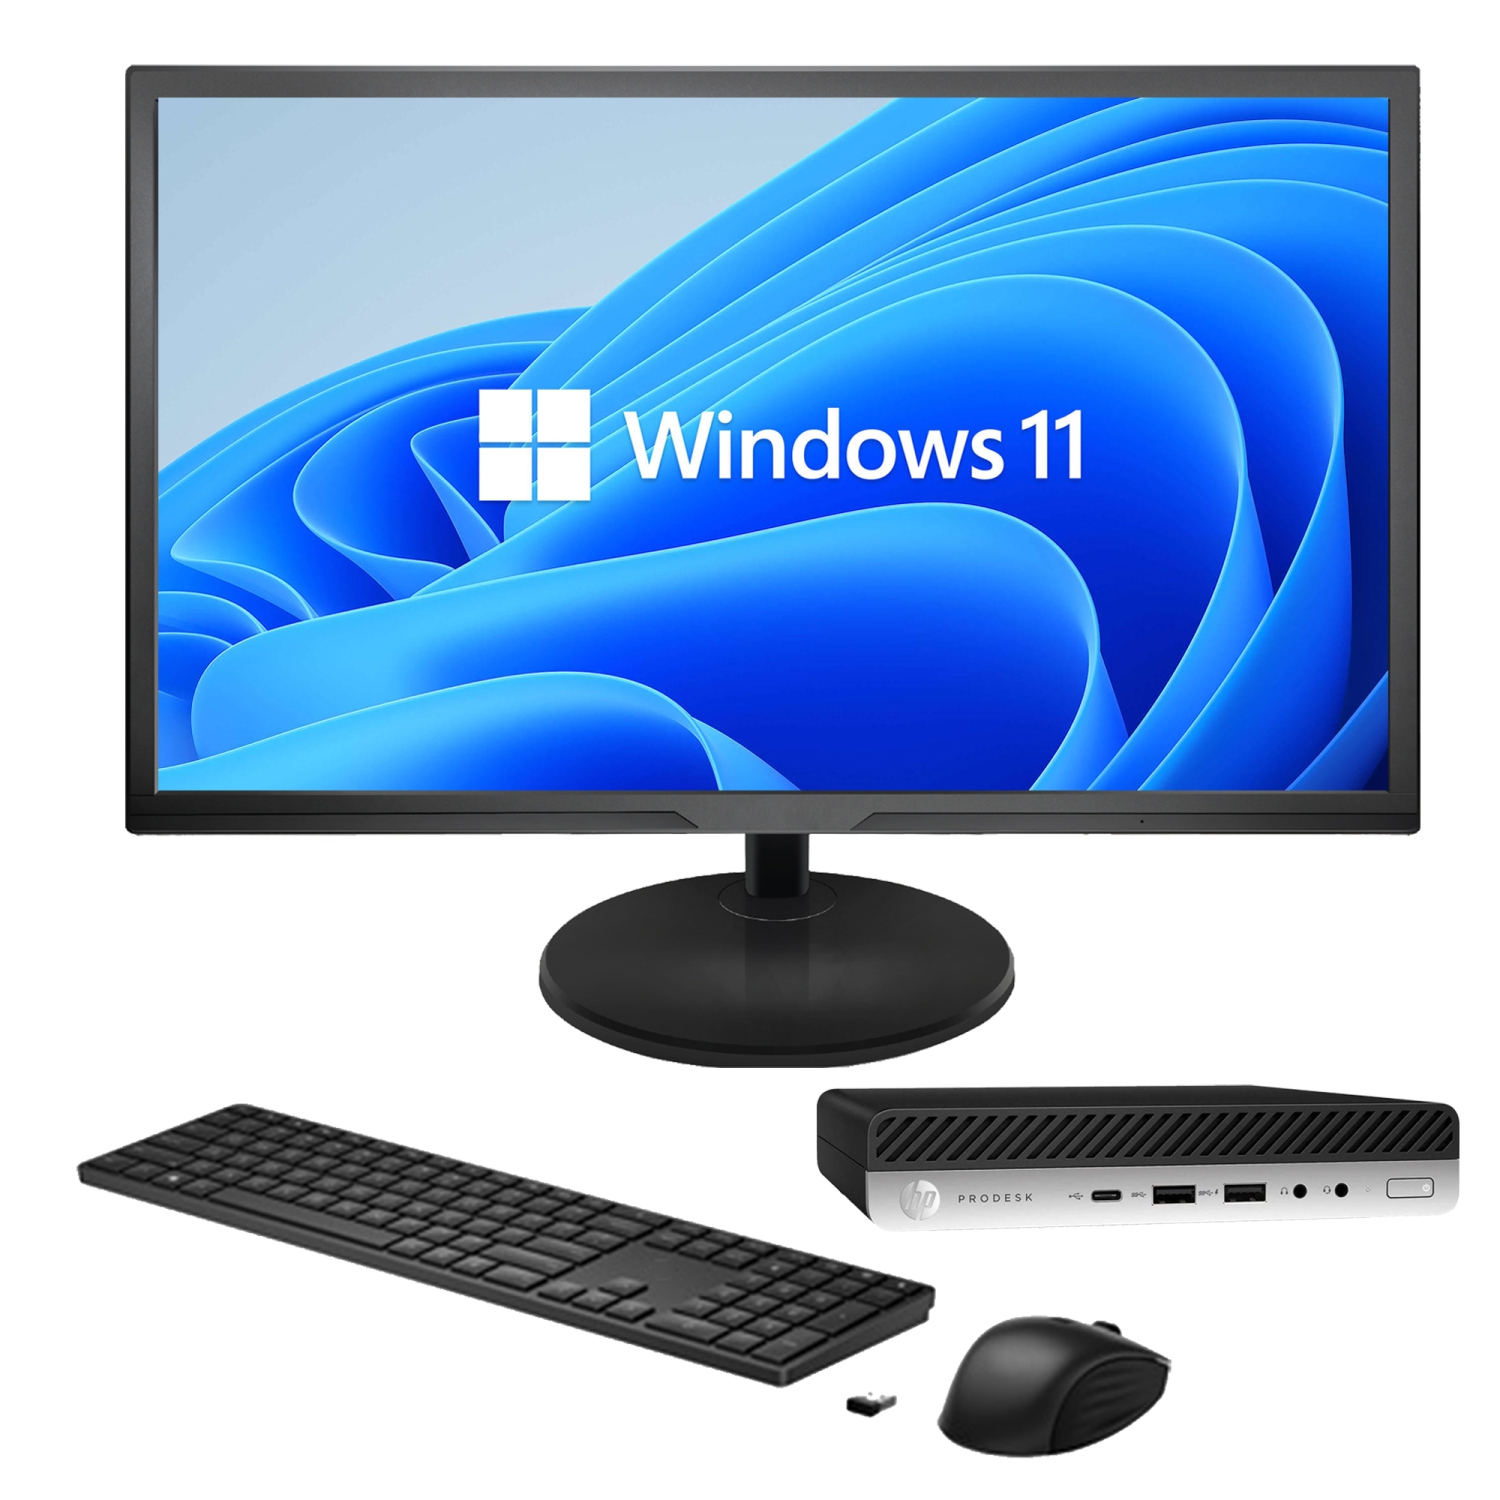 Refurbished (Good) - HP ProDesk 600 G4 Desktop Mini Business PC | Intel Core i5-8500T 8th Gen Processor | 8GB RAM | 256GB SSD | Windows 11 Pro - New 22 inch Monitor